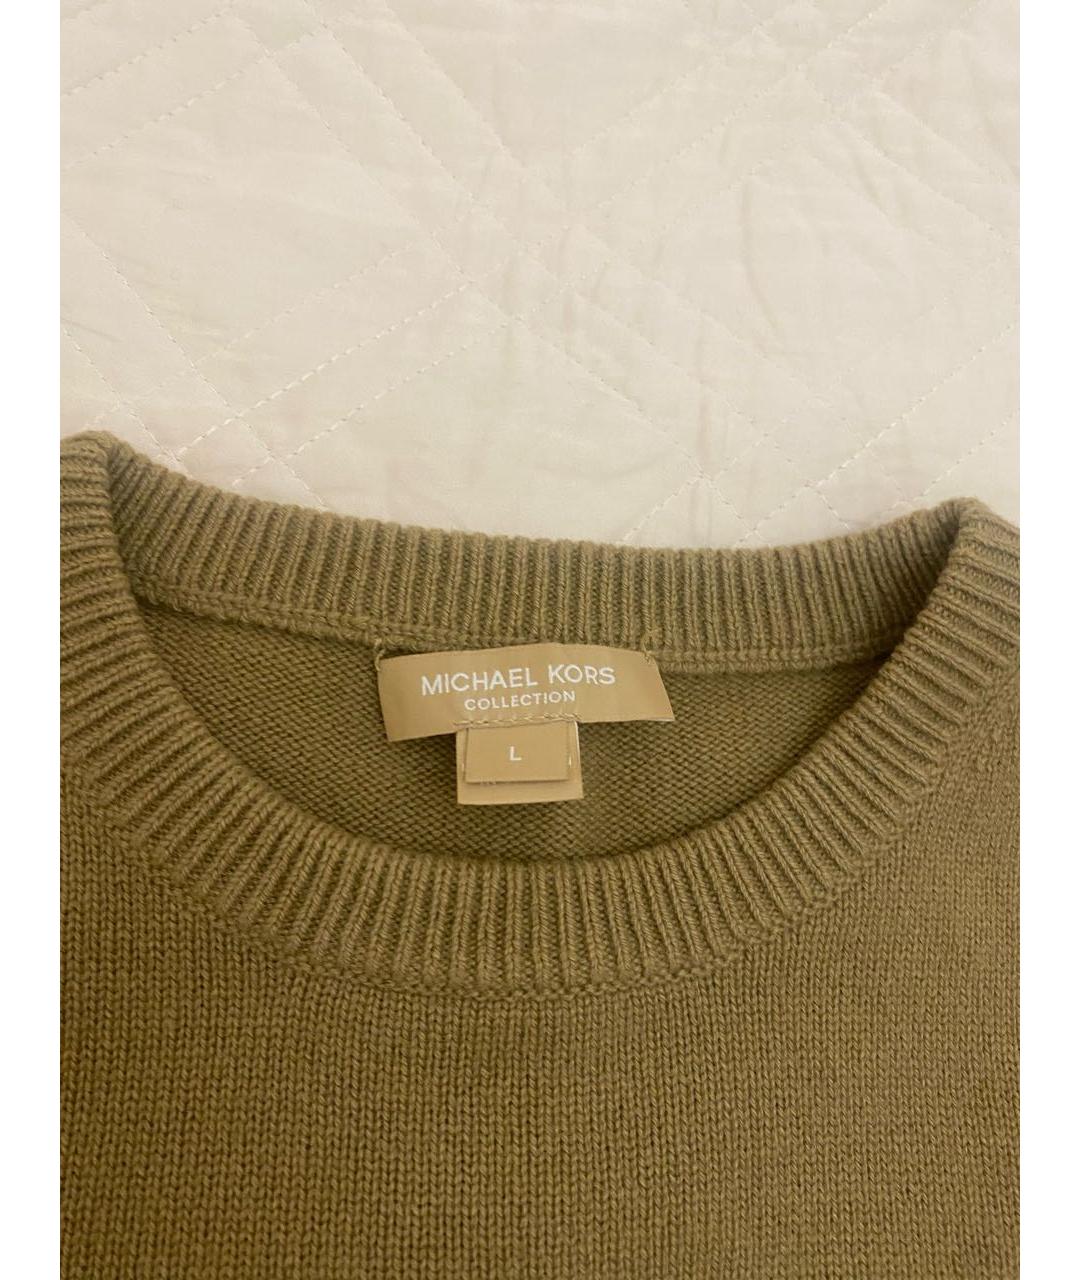 MICHAEL KORS COLLECTION Хаки кашемировый джемпер / свитер, фото 2